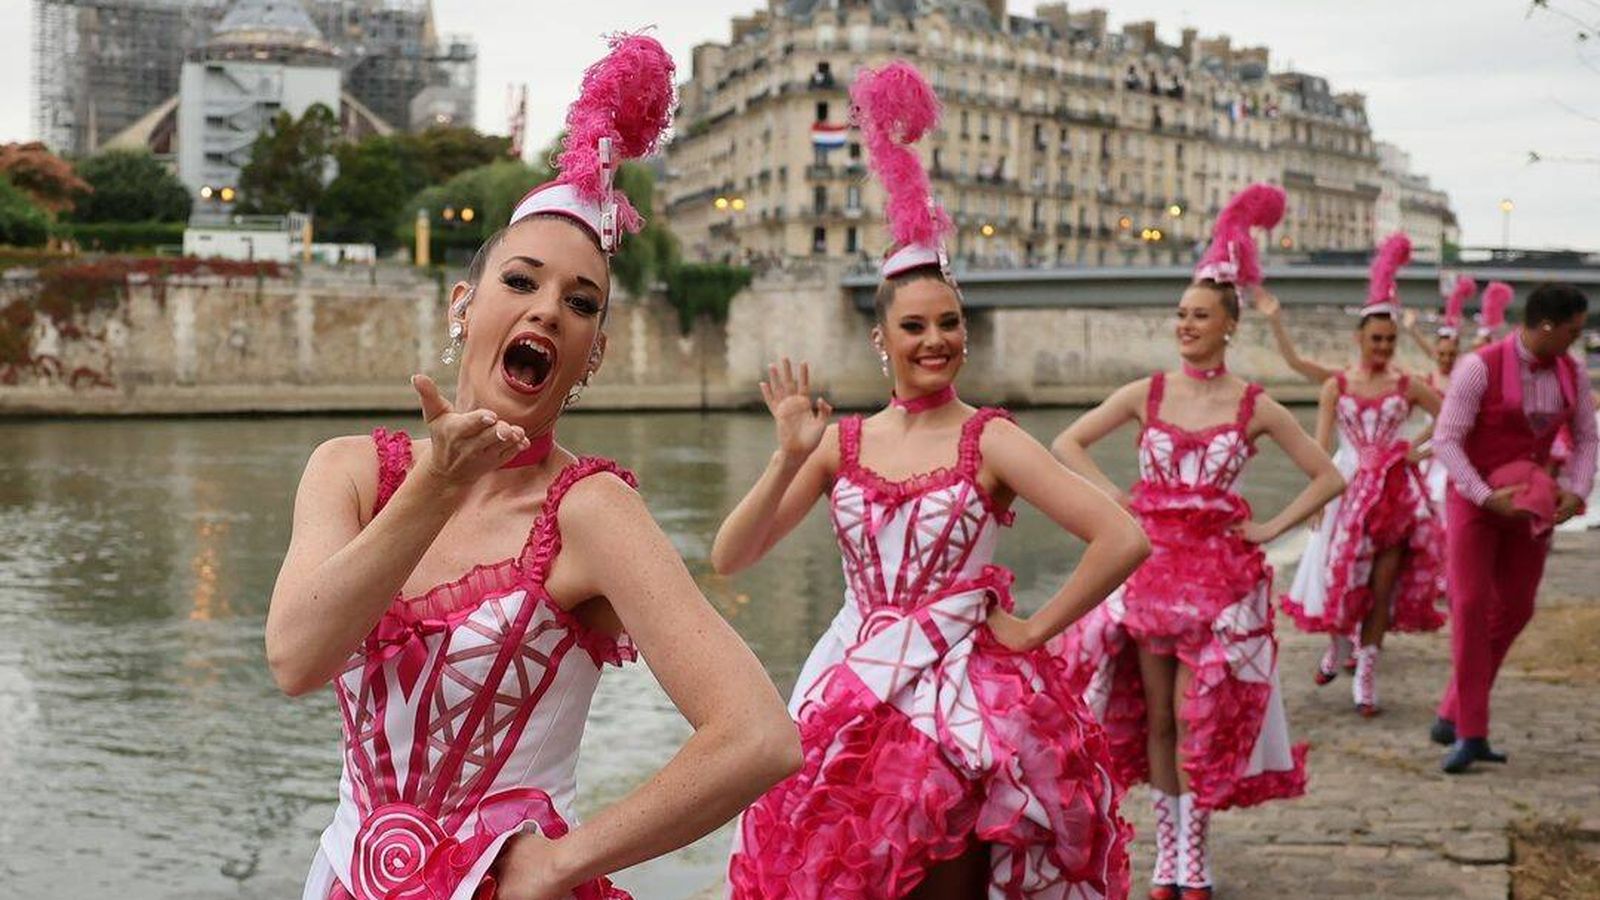 Las bailarinas del Moulin Rogue llevaron el mismo colorete rosa fucsia. (Twitter/@olympics)